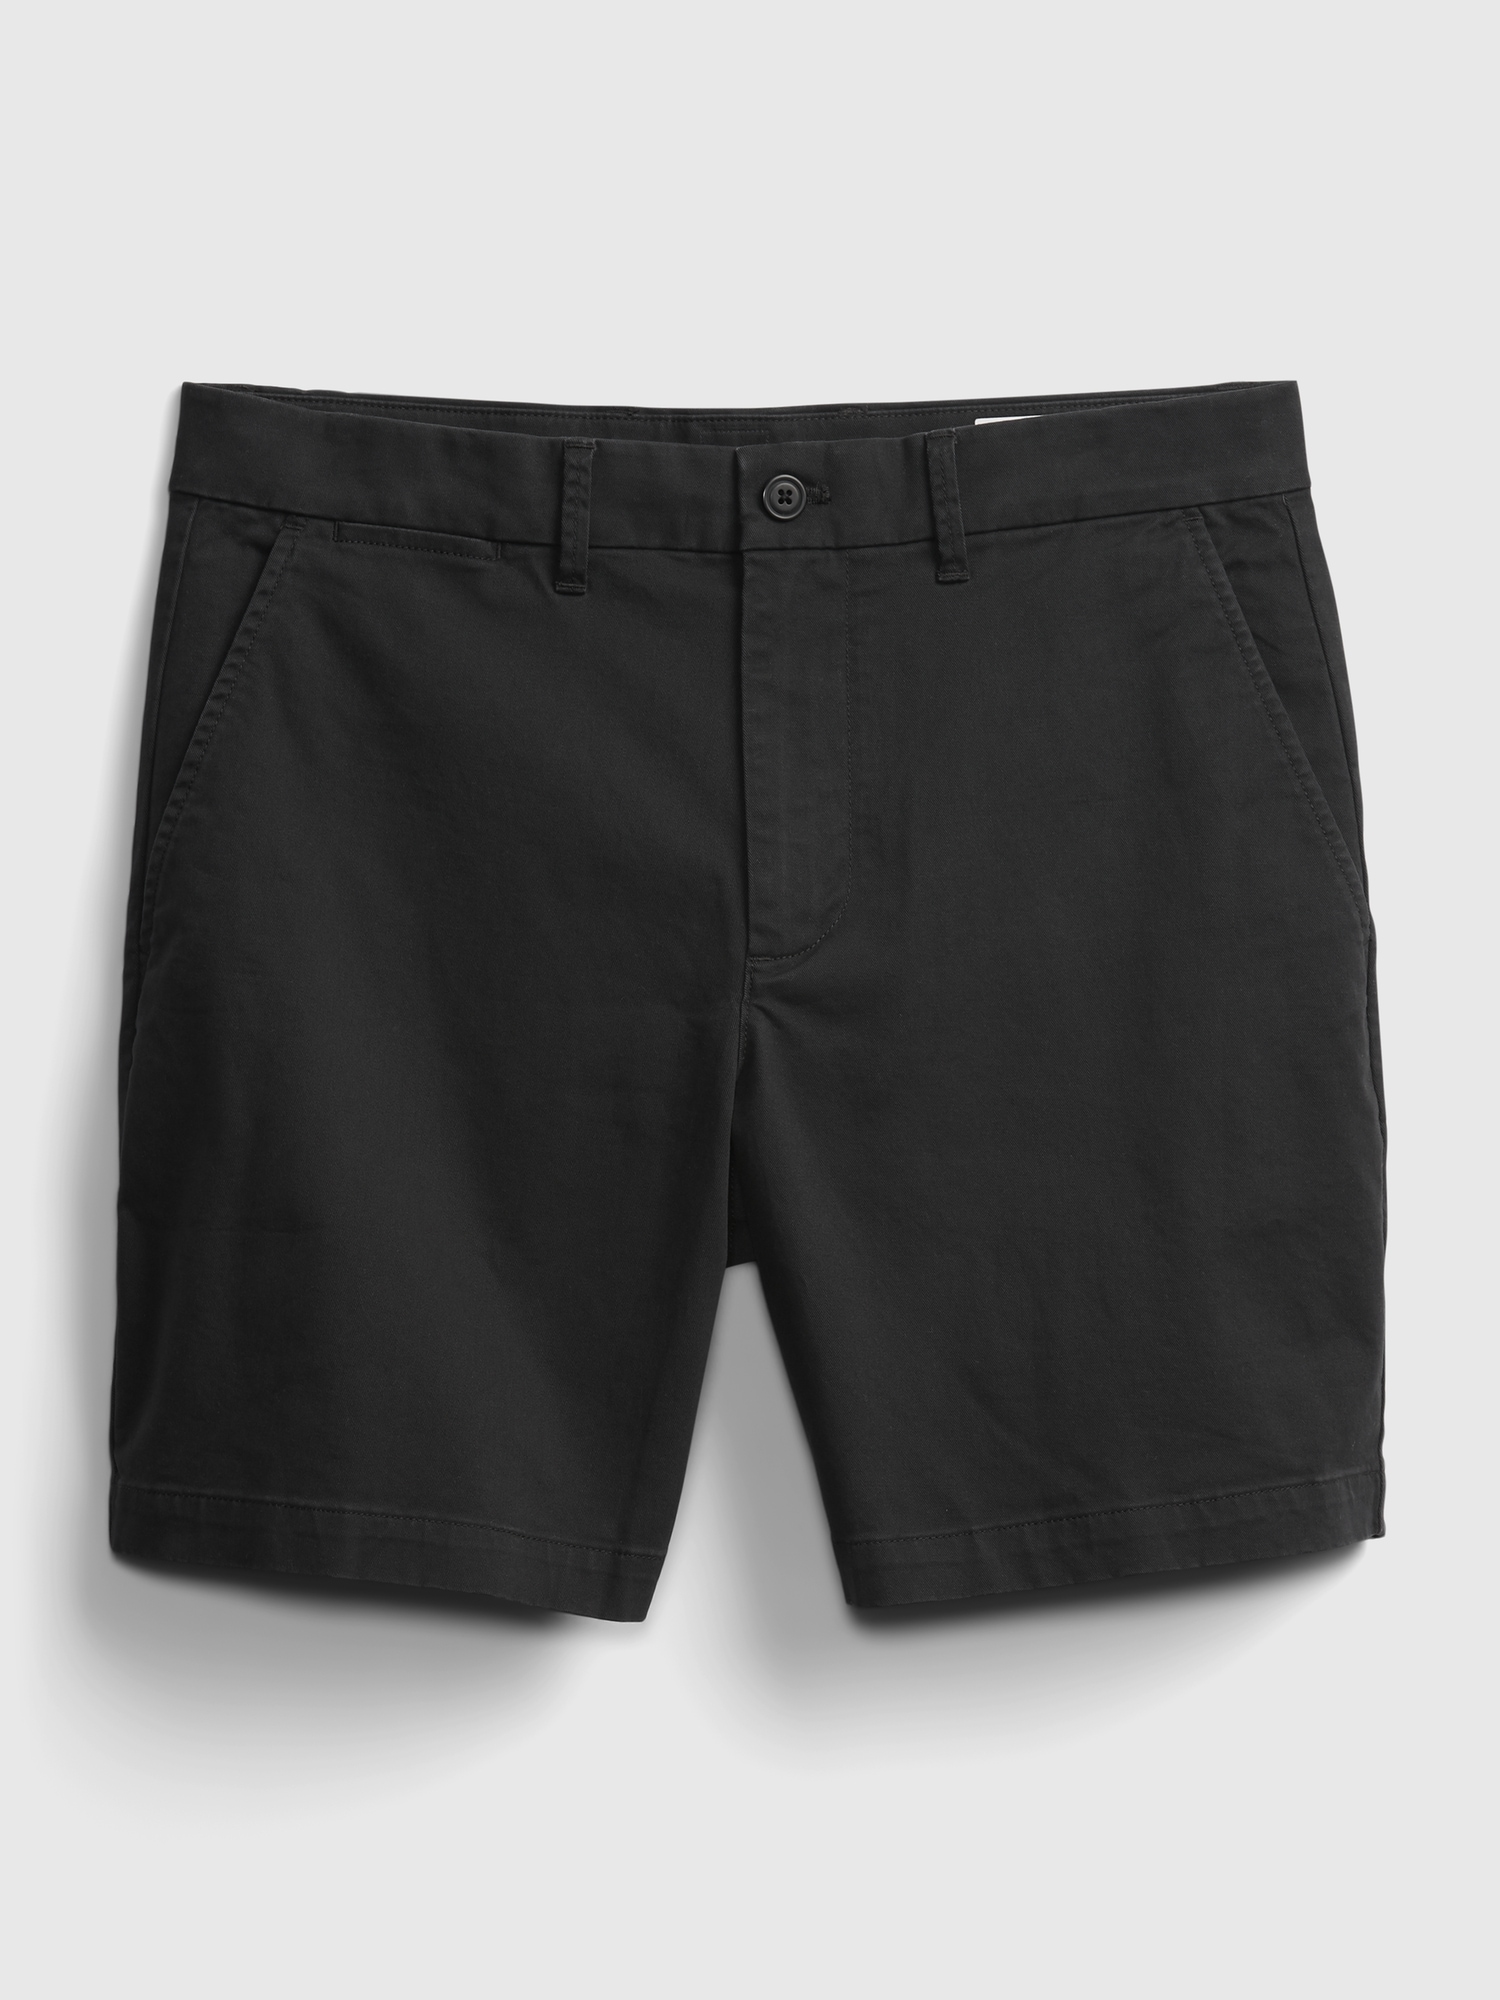 kleding stof Gevangene scheiden 8" Vintage Shorts | Gap